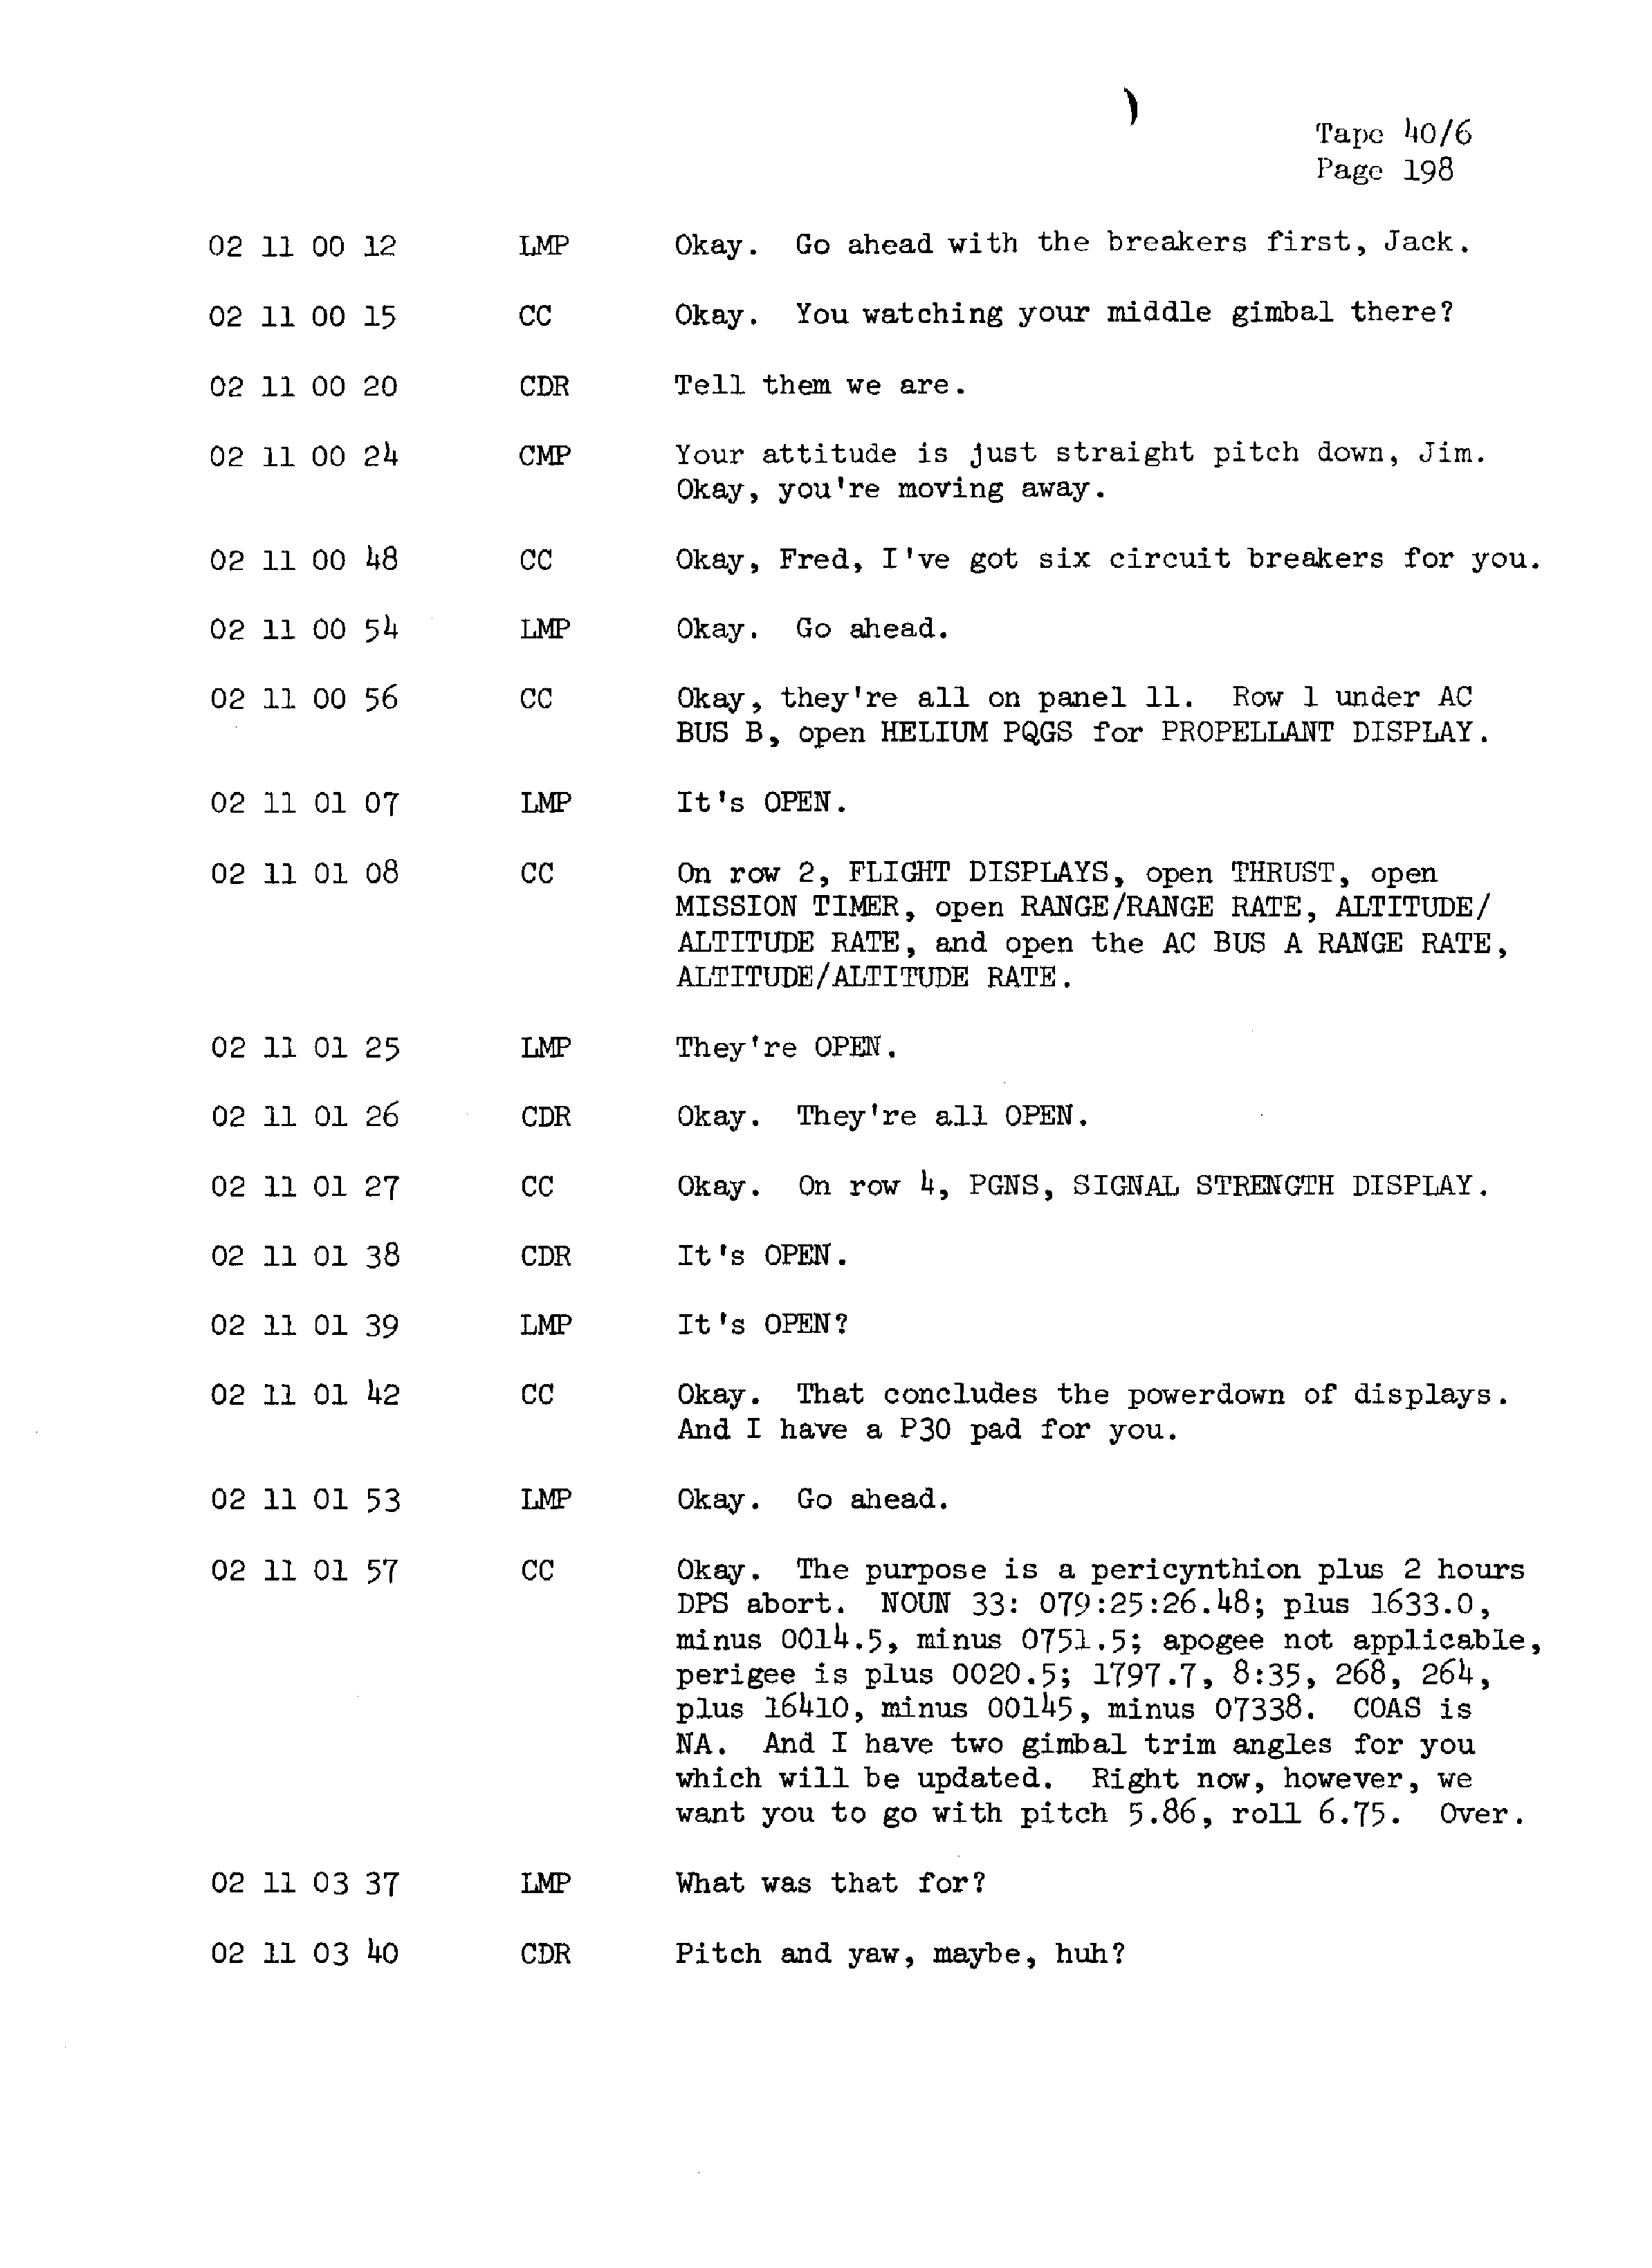 Page 205 of Apollo 13’s original transcript